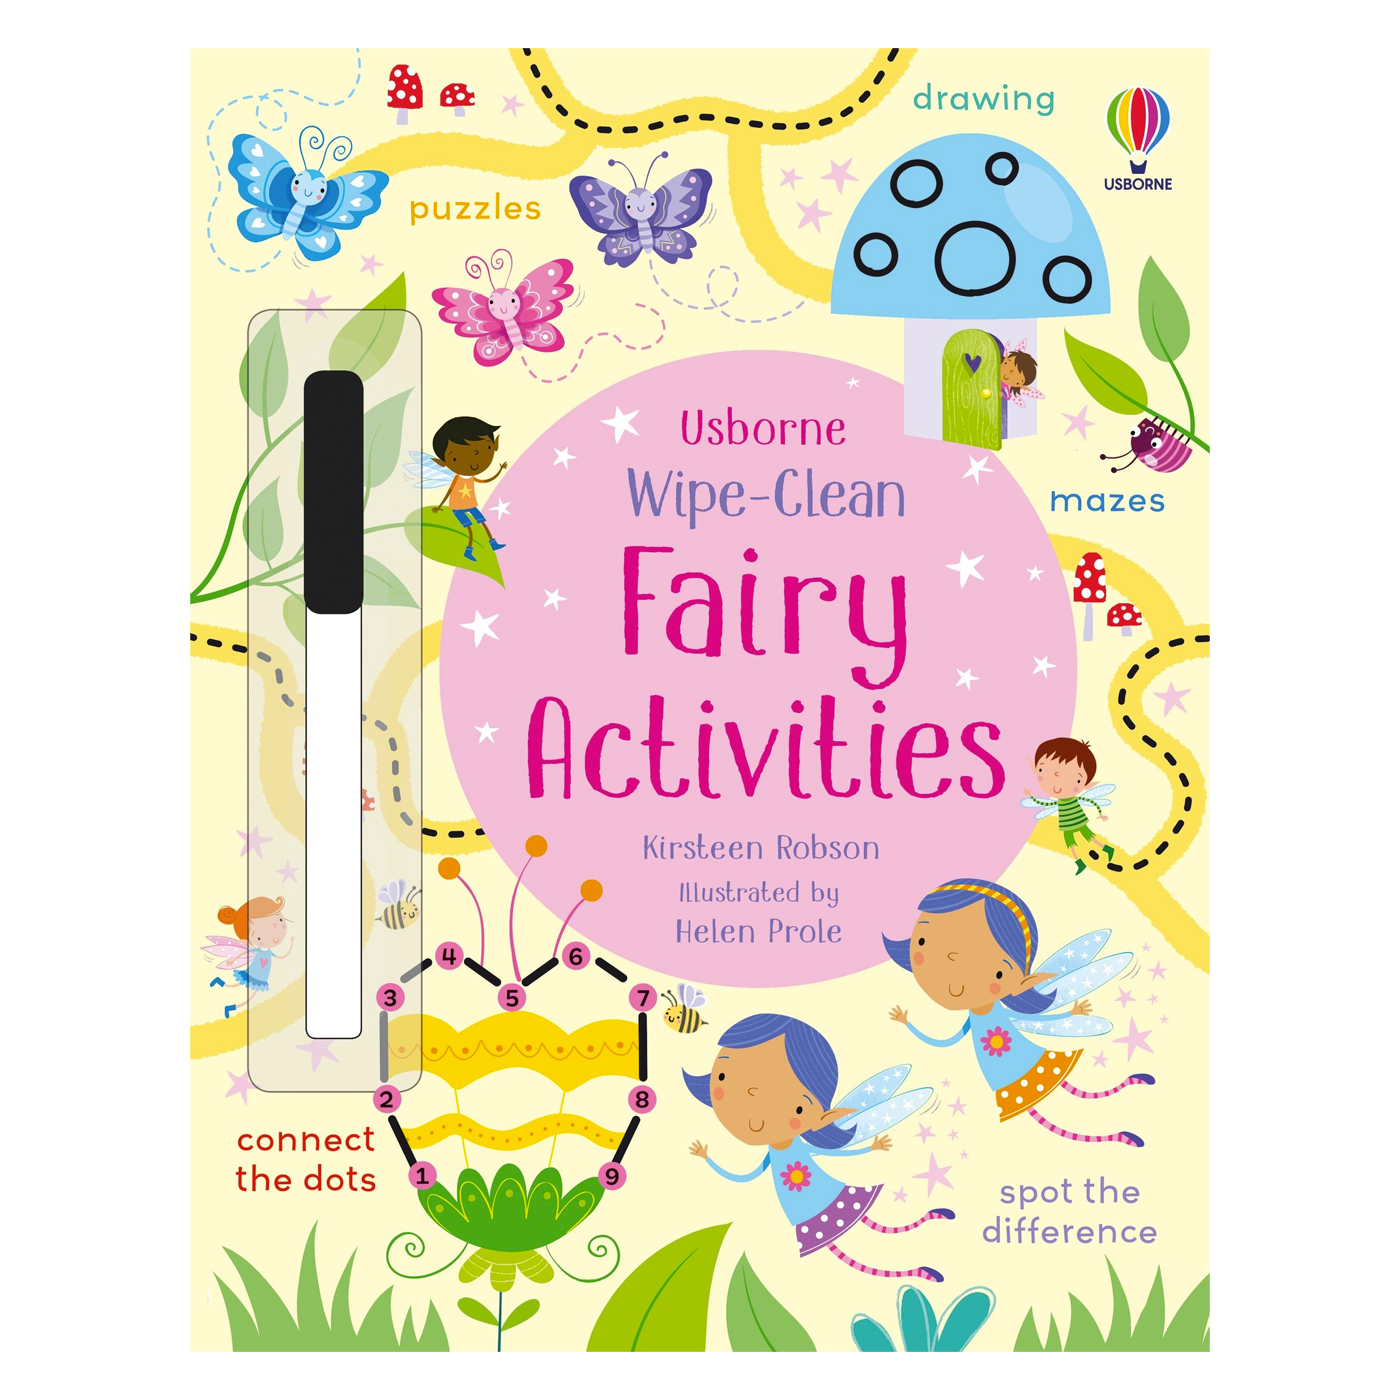  Wipe-Clean Fairy Activities